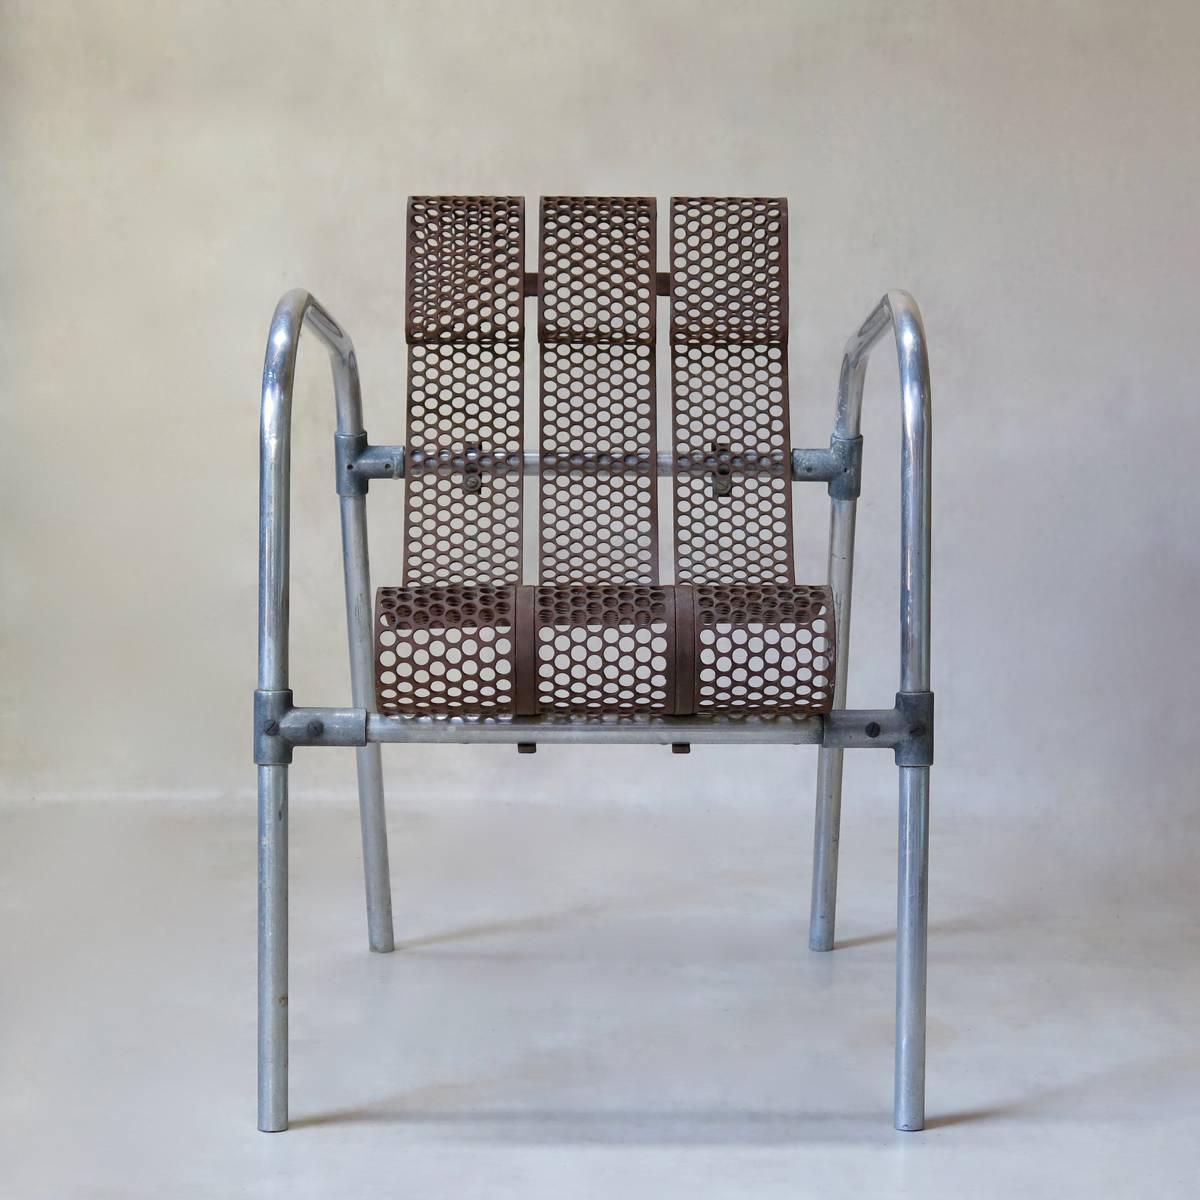 Une paire de fauteuils rares avec une structure en aluminium tubulaire et des sièges faits de bandes de tôle perforée. Conception ingénieuse de Claude Adrien pour Meubles Artsitiques Modernes (M.A.M.) au début des années 1950.